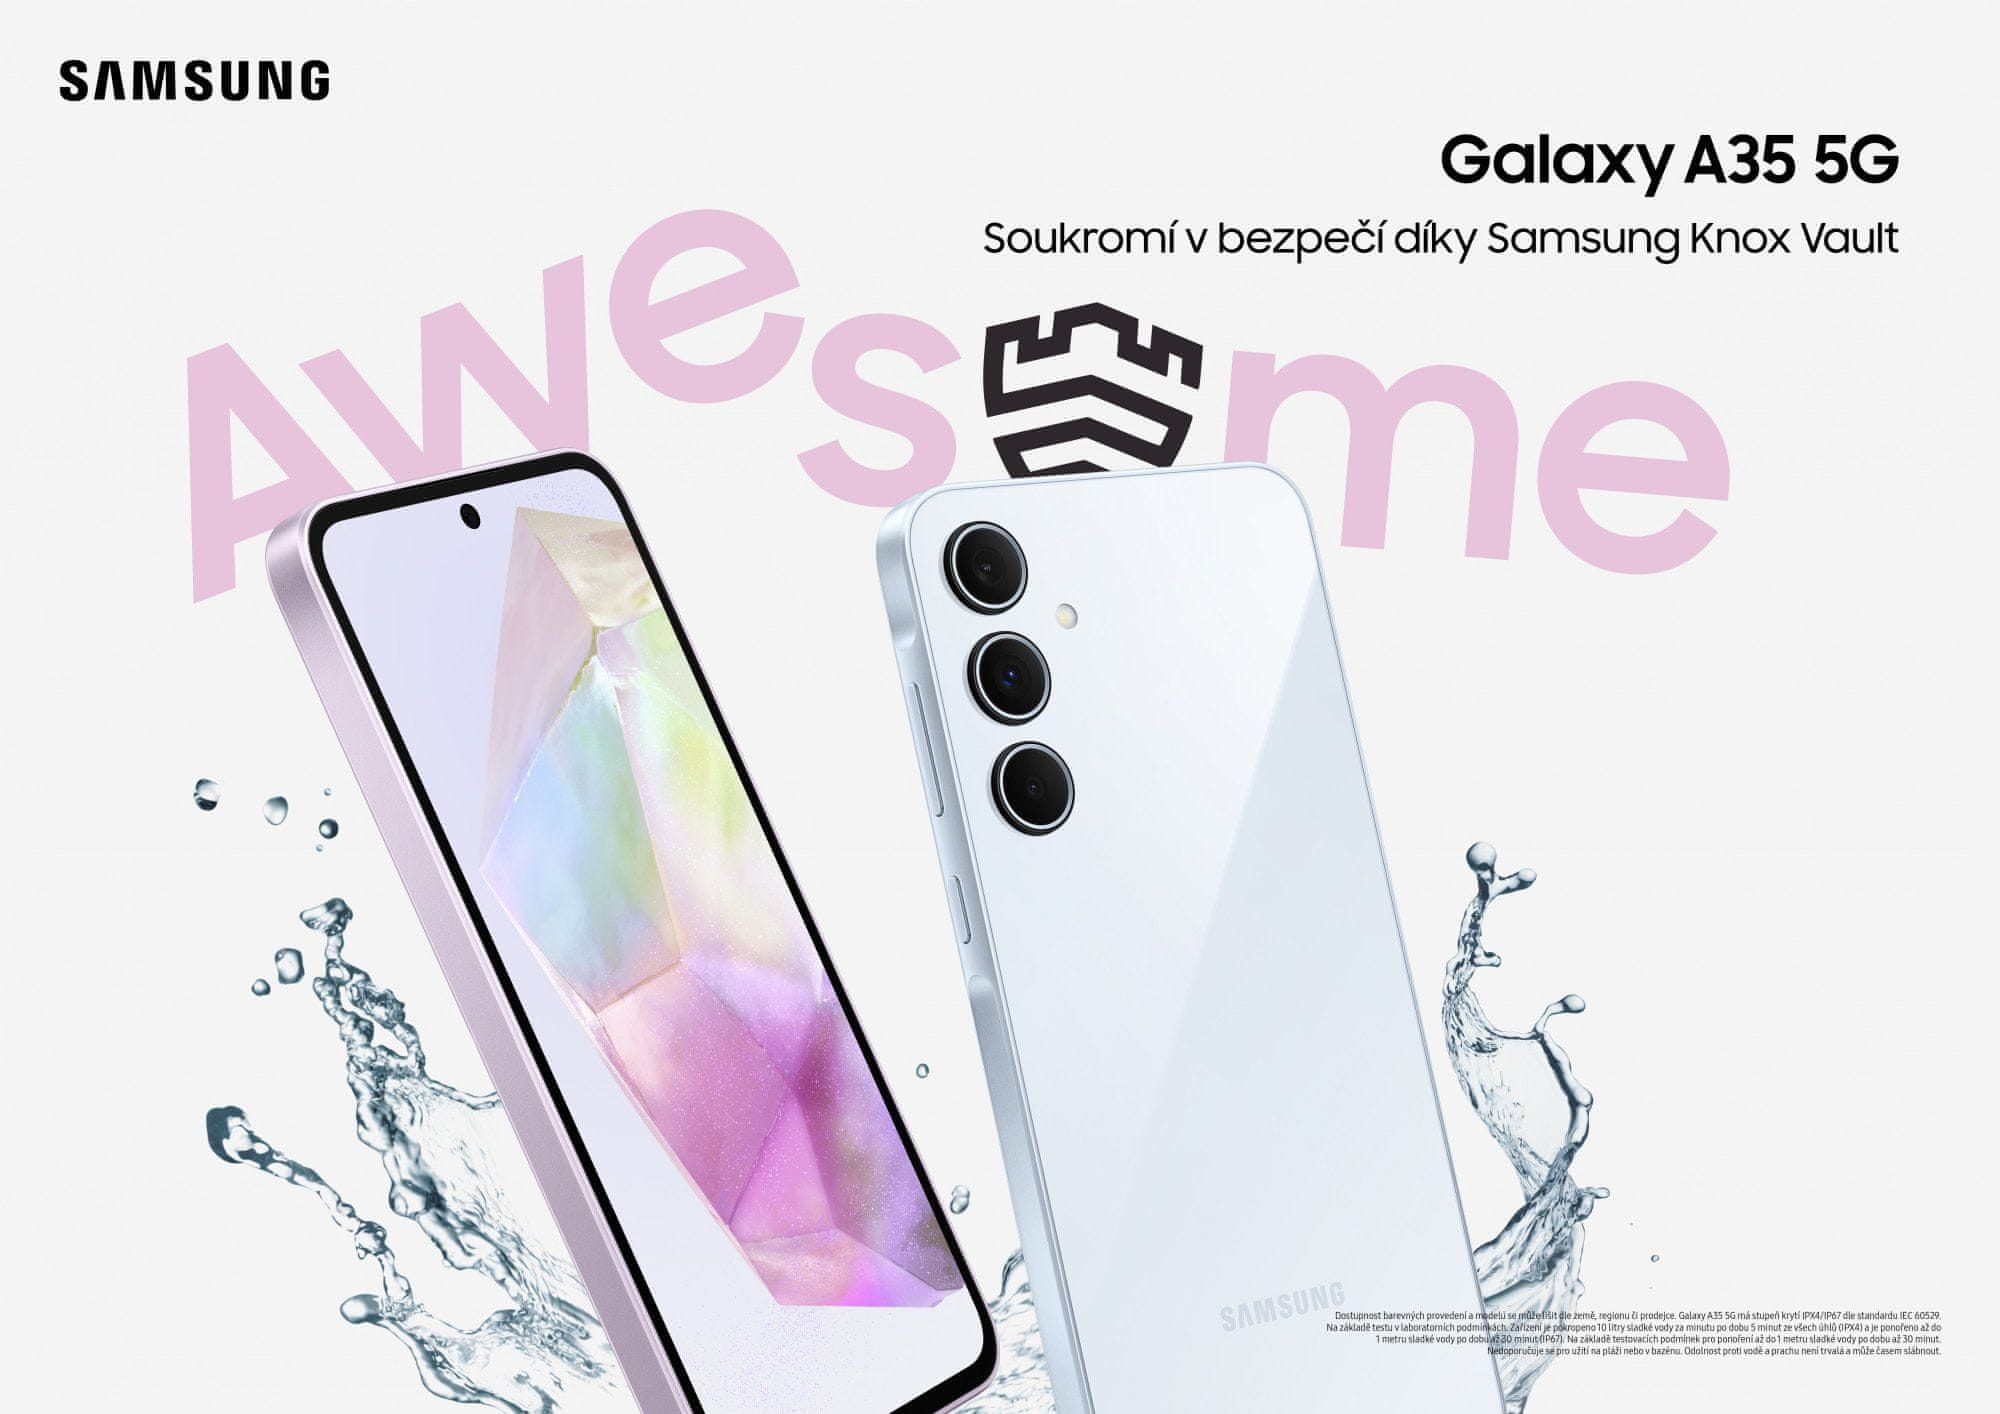 Samsung Galaxy A35 5G, chytrý telefon, vlajková loď velký displej Super AMOLED obnovovací frekvence stabilizace obrazu tři fotoaparáty nejrychlejší 5G připojení 5G internet podpora nejrychlejšího připojení Corning Gorilla Glass Victus+ výkonný telefon IP67 NFC